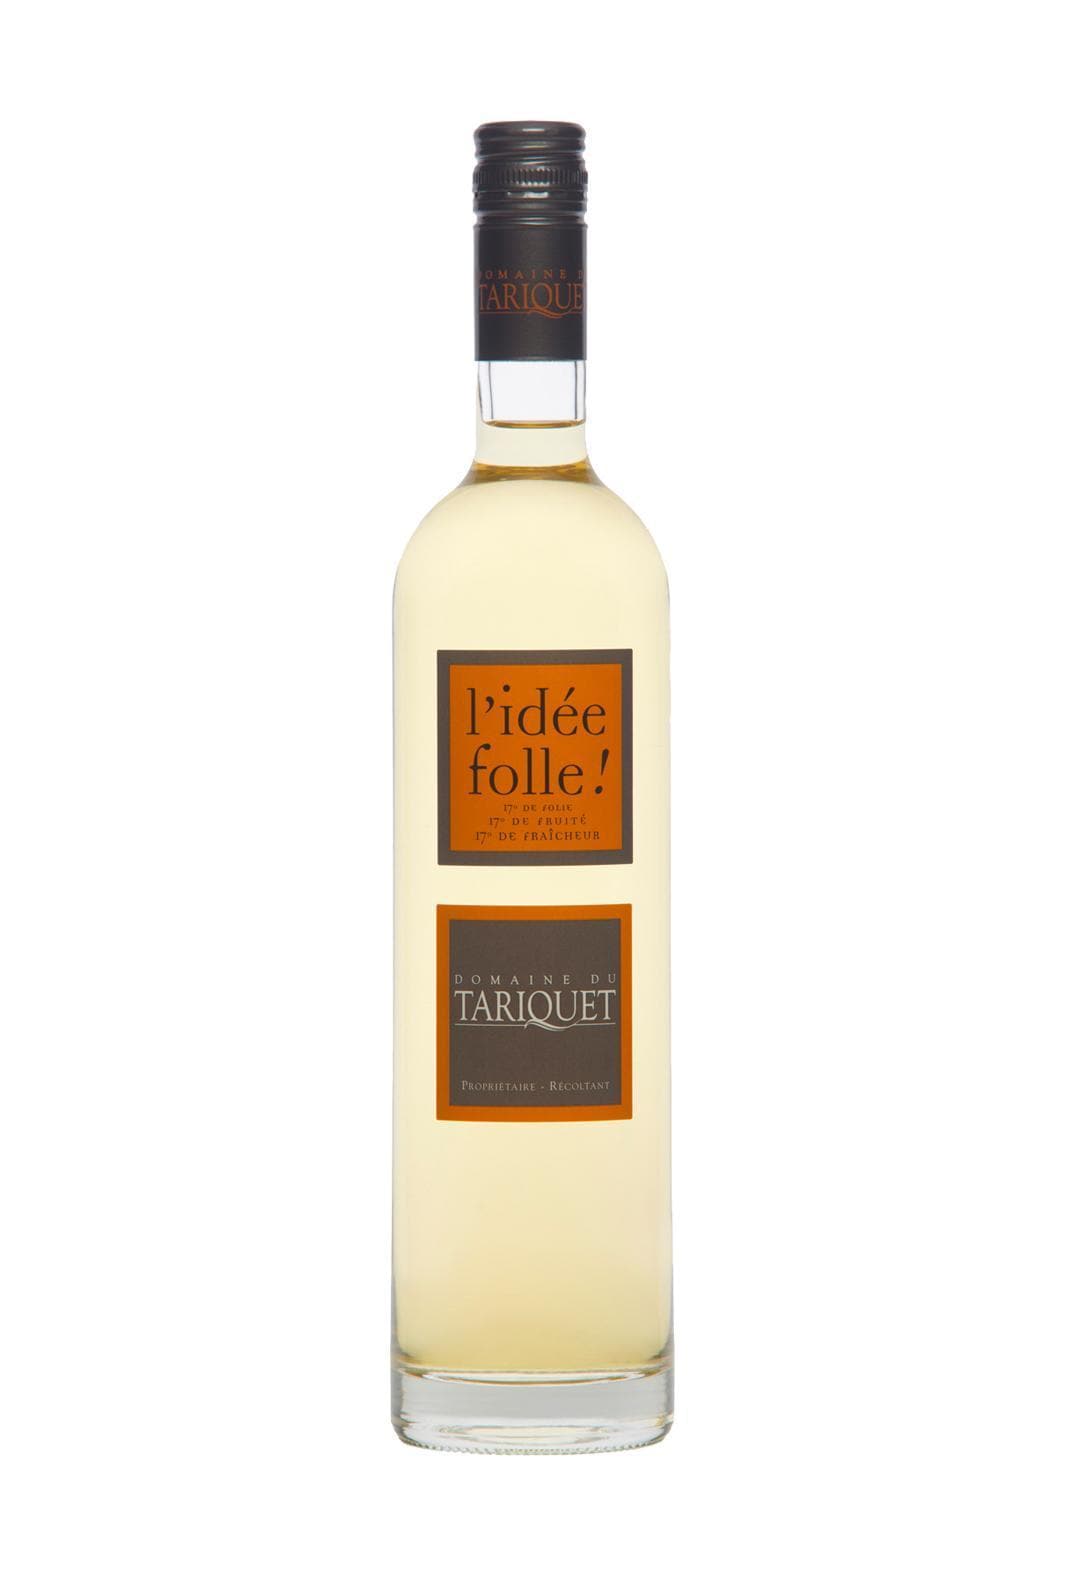 Domaine Tariquet Vin de Liqueur l'Idee Folle 17% 750ml | Liquor & Spirits | Shop online at Spirits of France